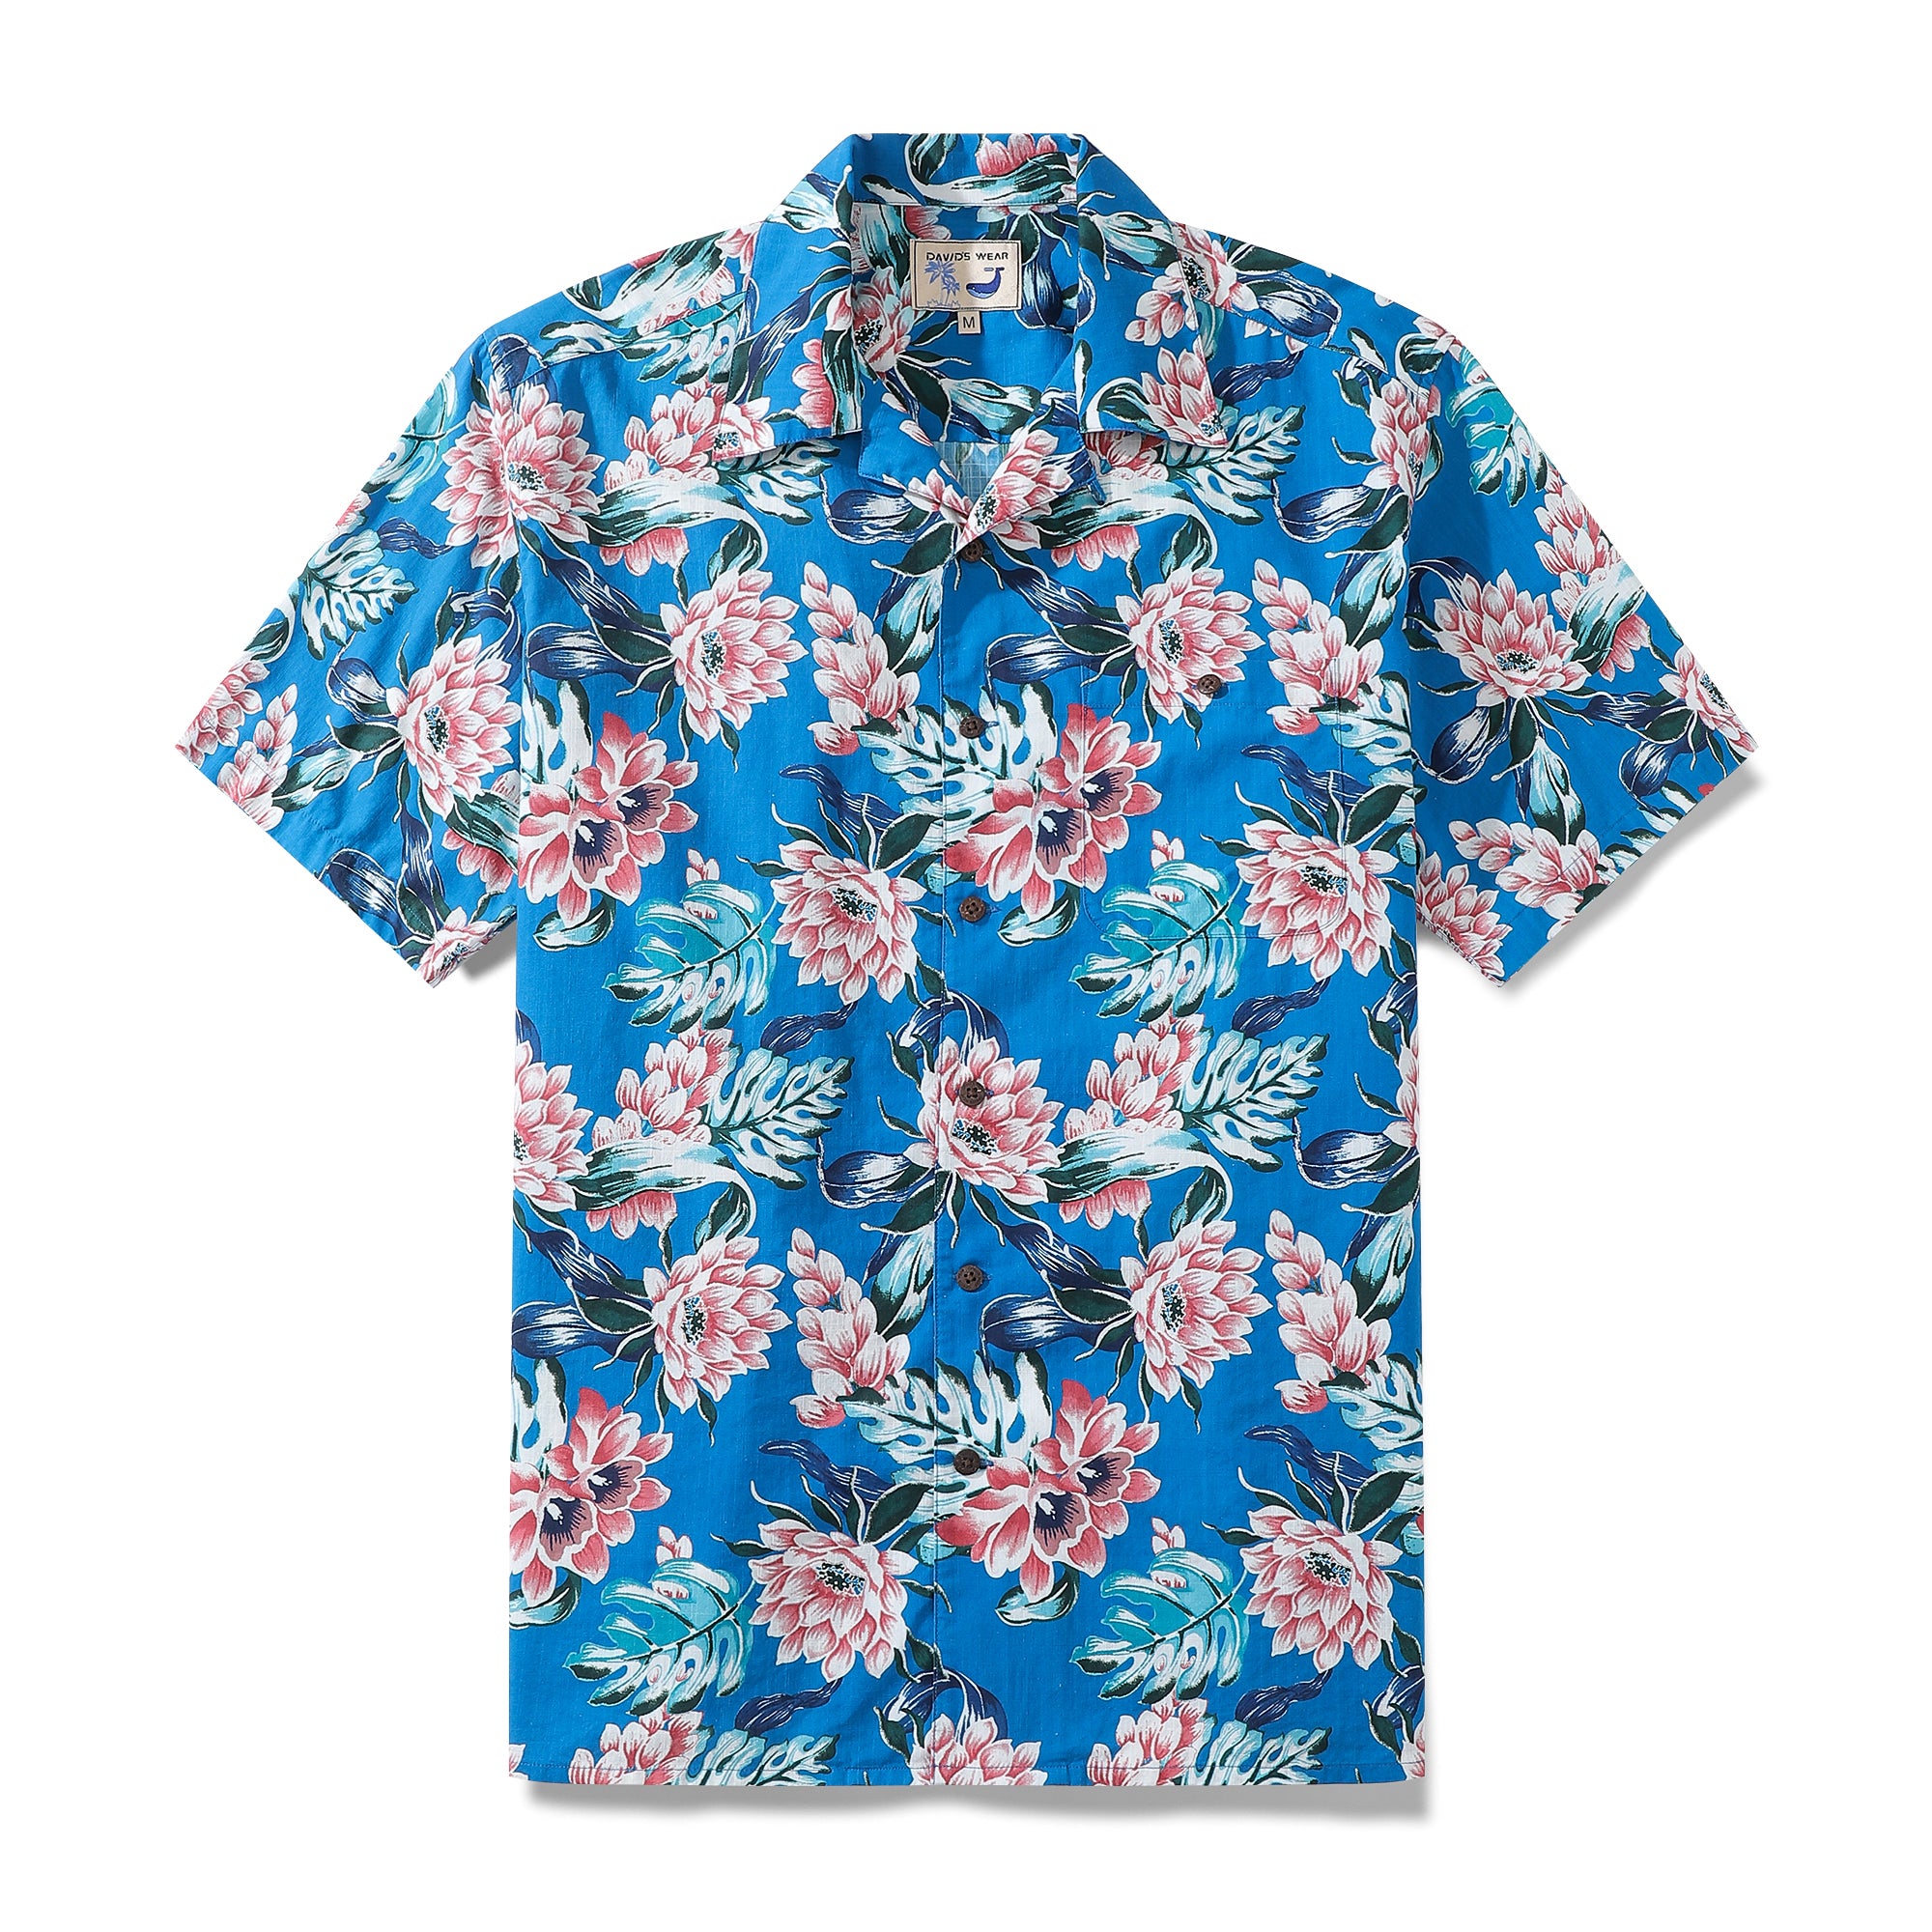 Men's Camp Shirt 1930s Vintage Cotton Aloha Hawaiian Shirt